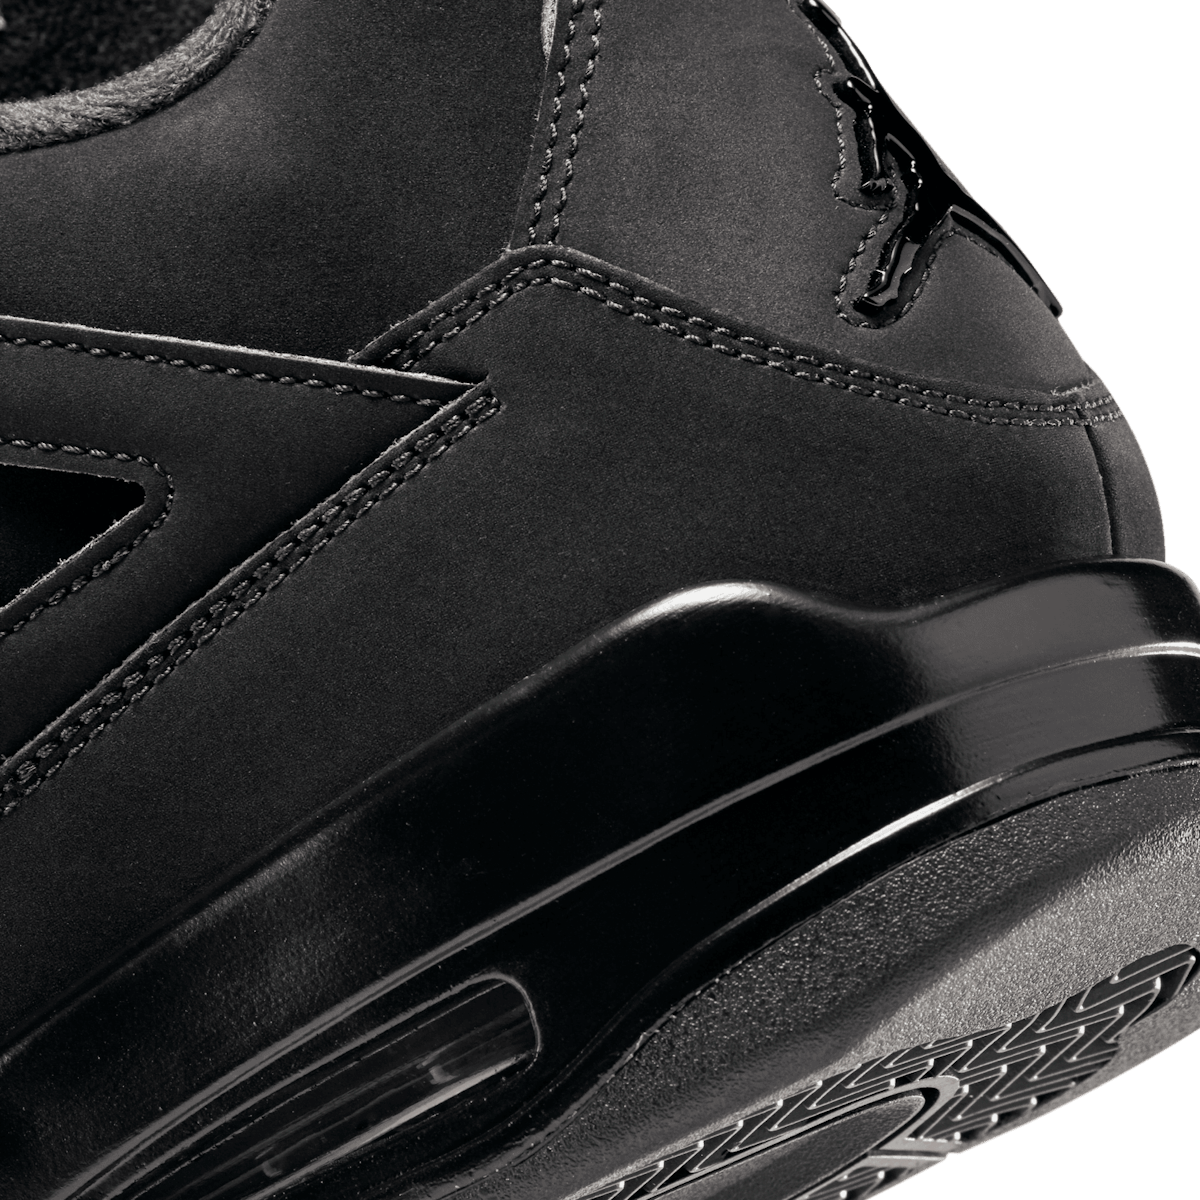 Nike SB x Air Jordan 4 Black Cat Release Date